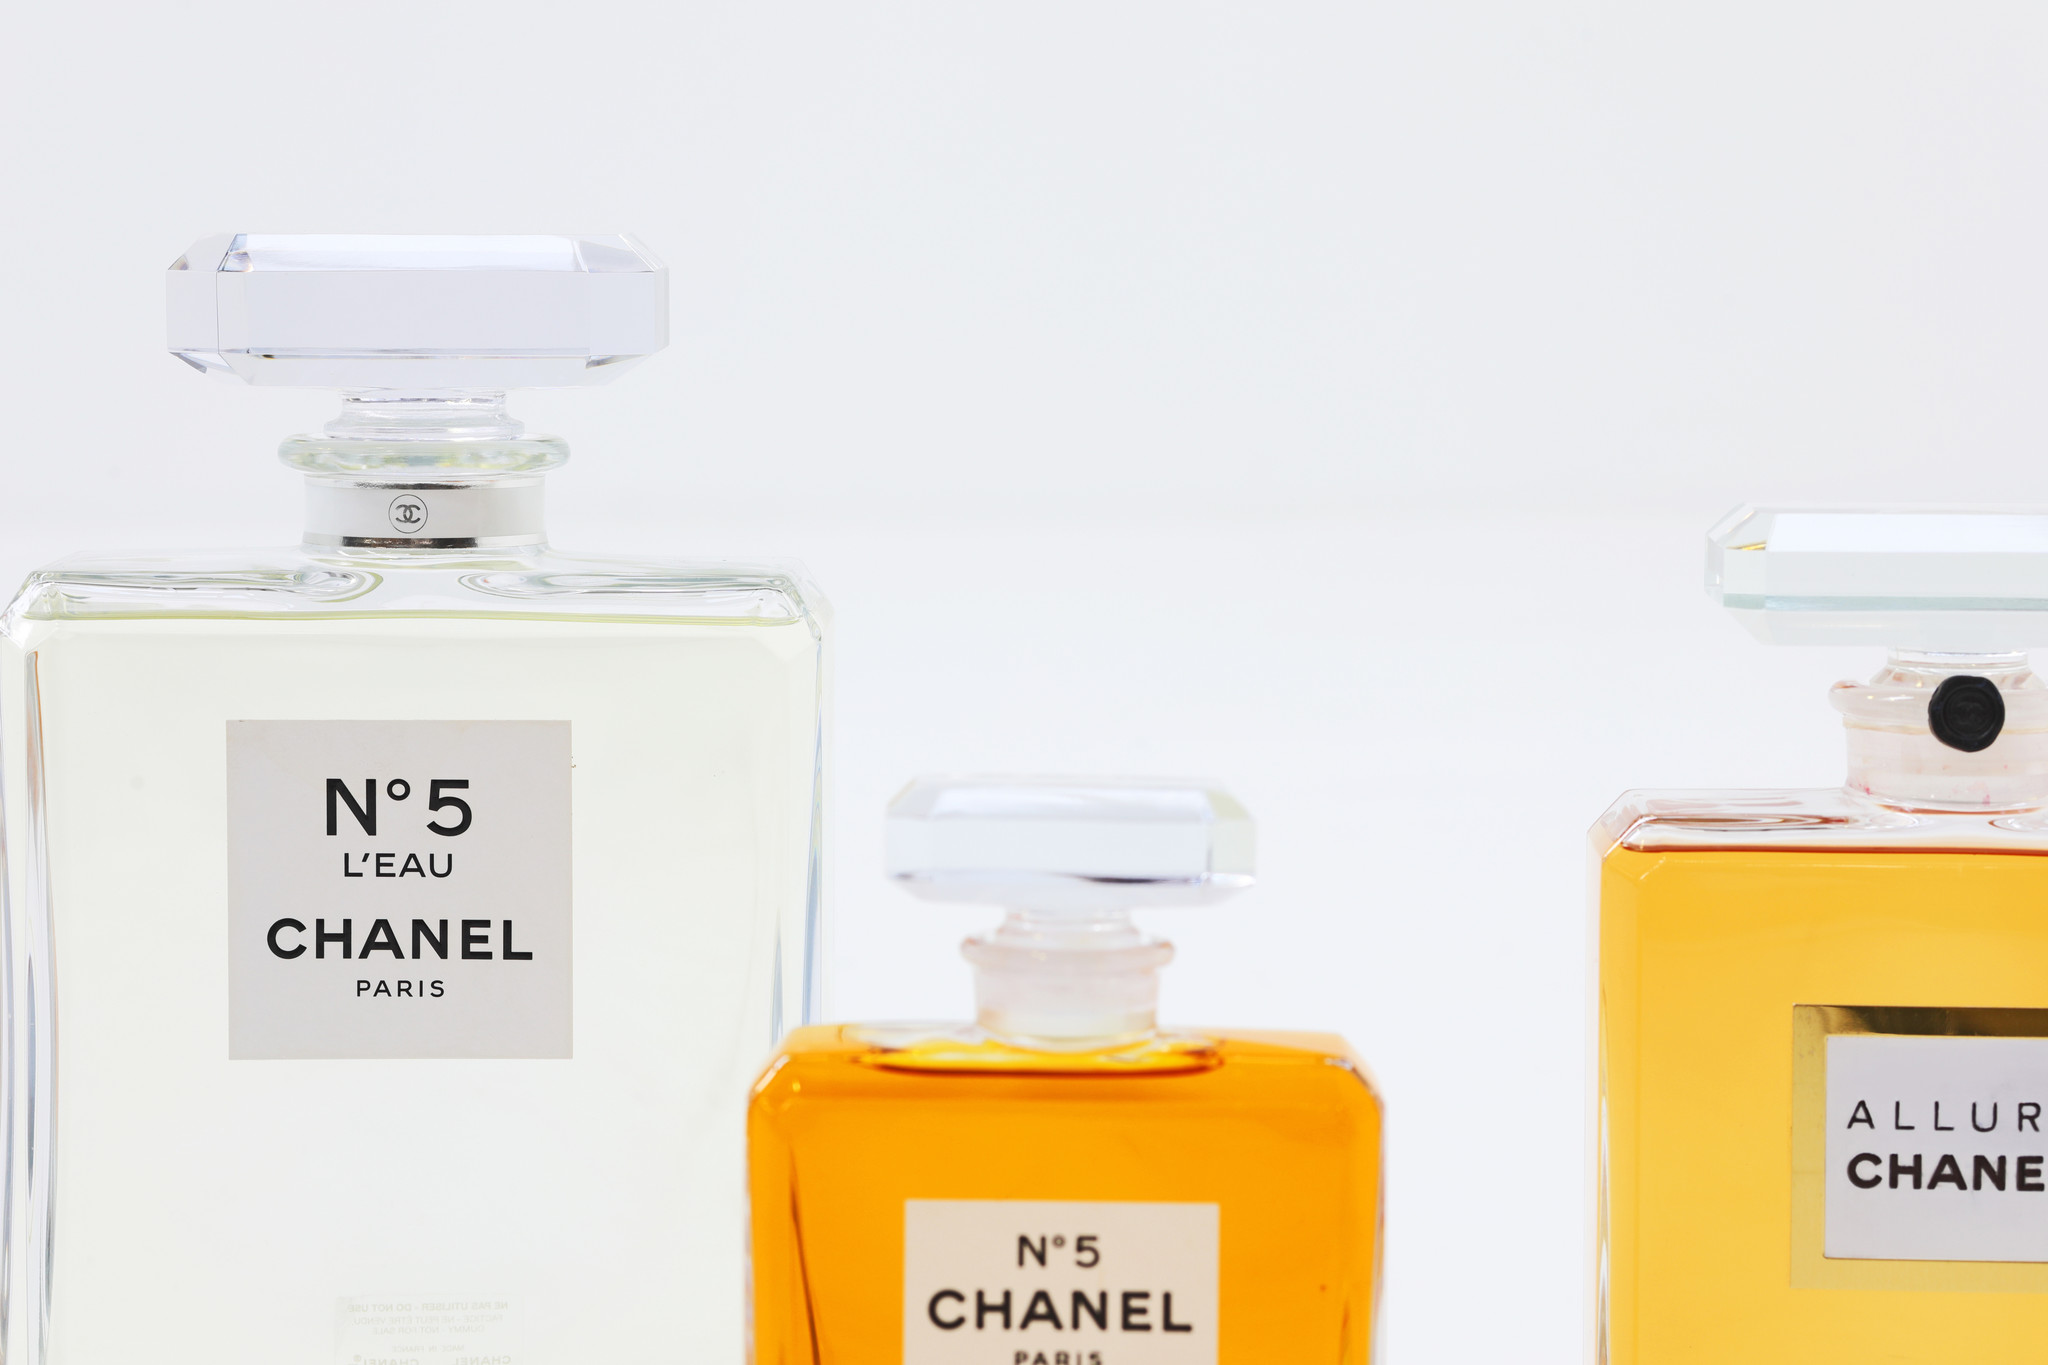 Chanel bottles set